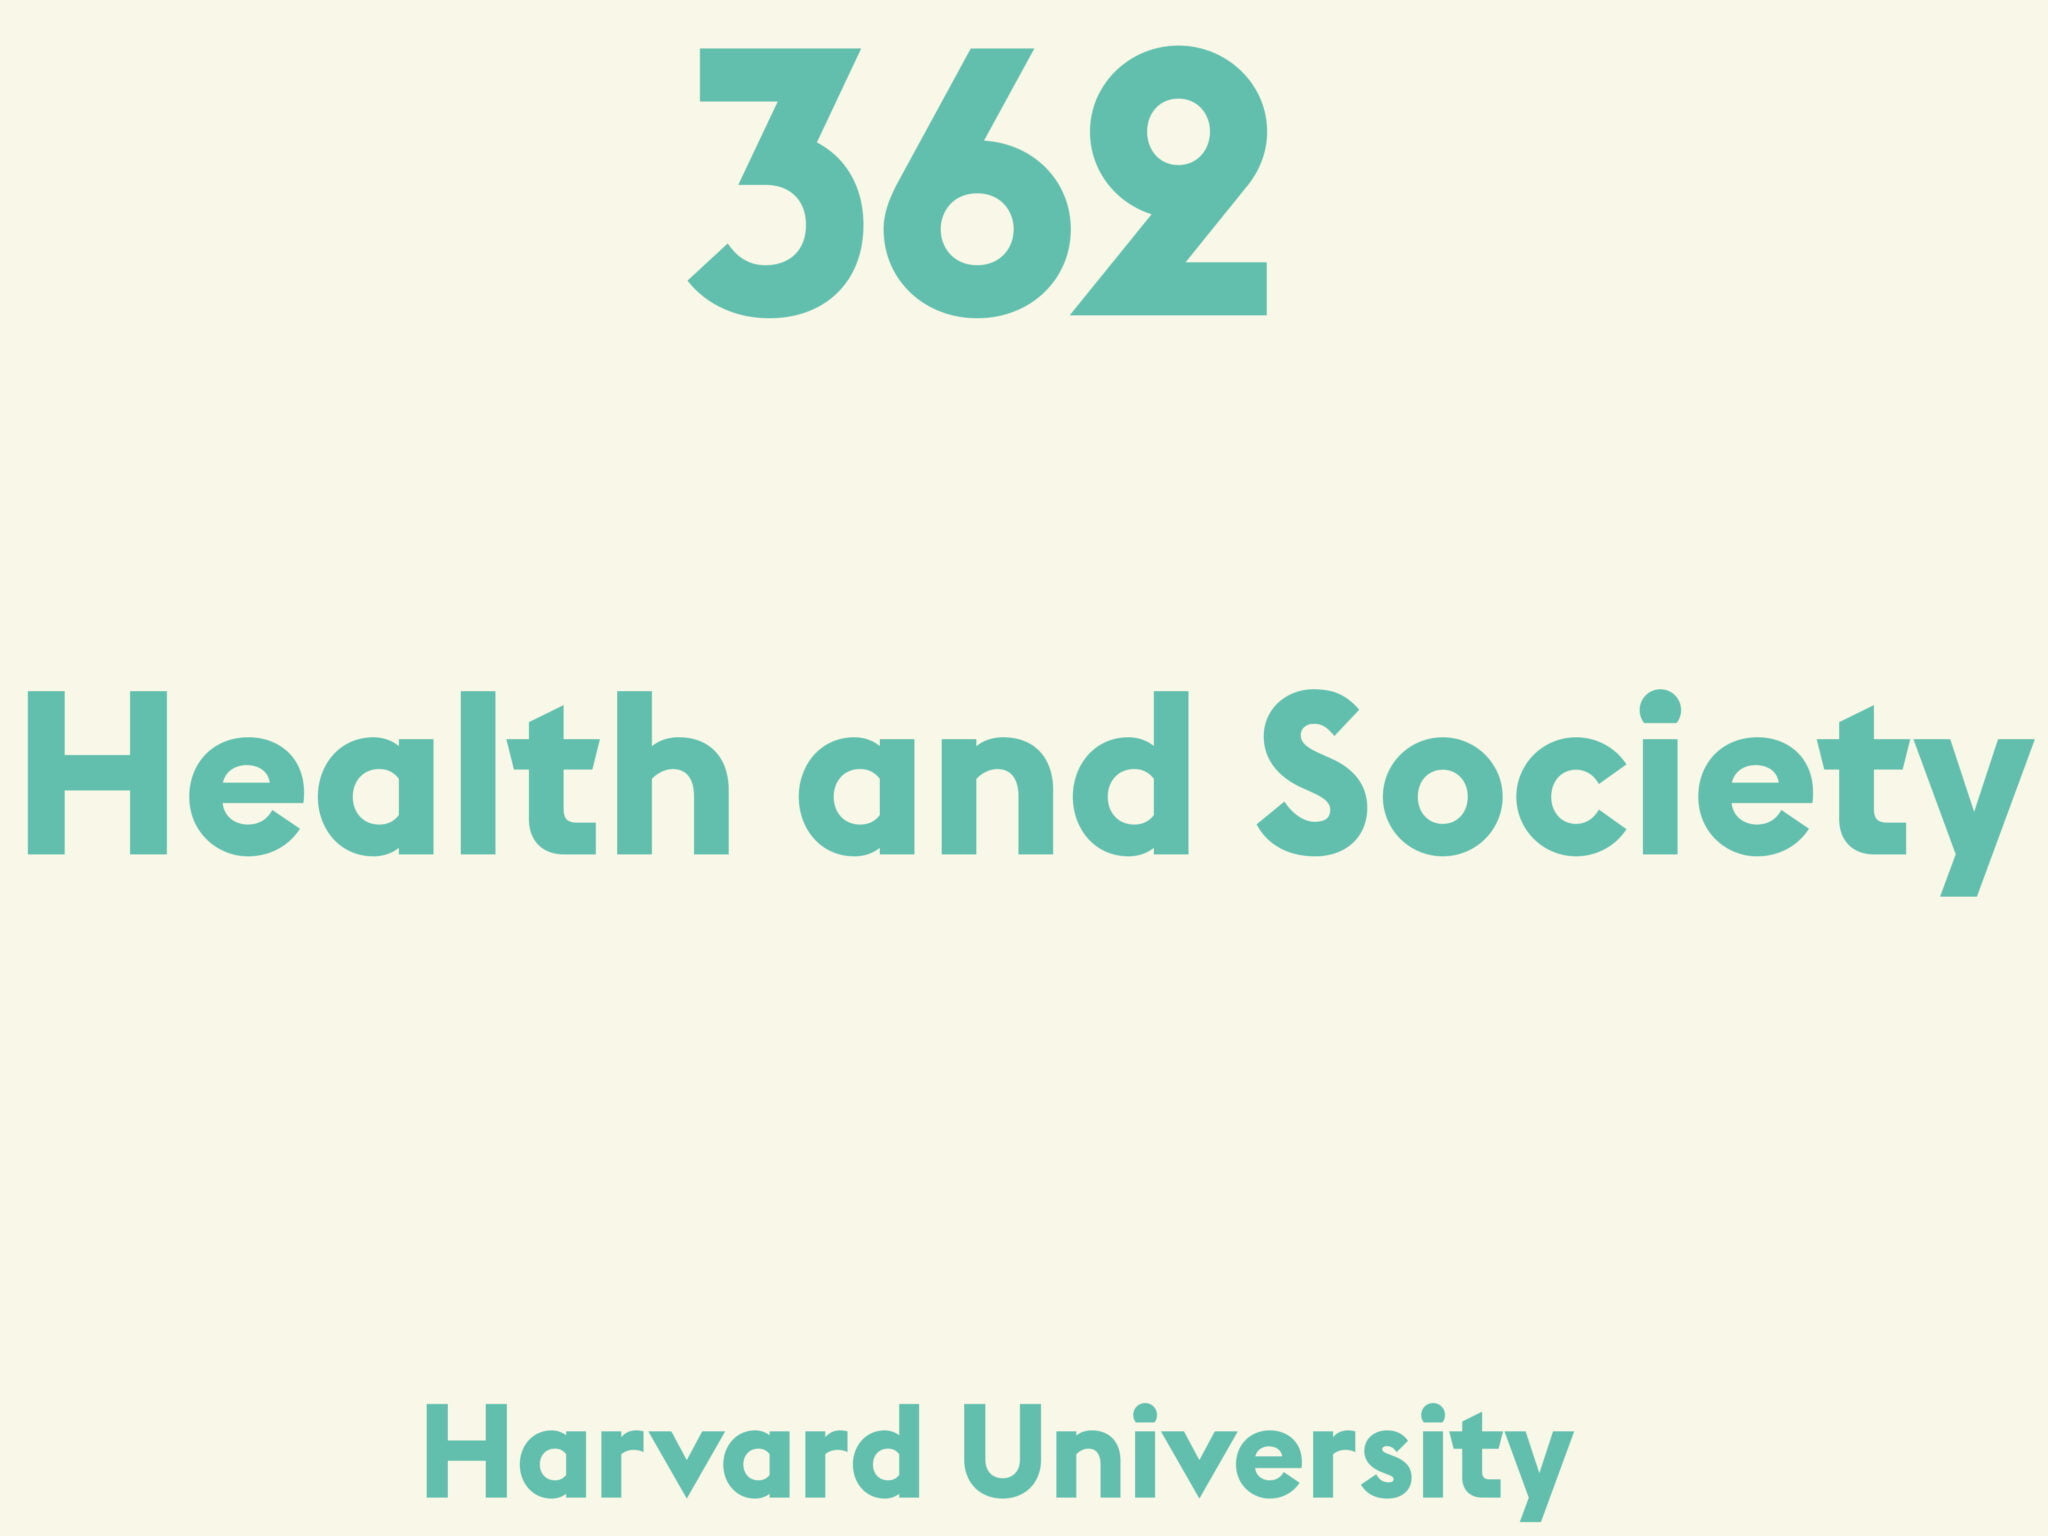 Health and Society